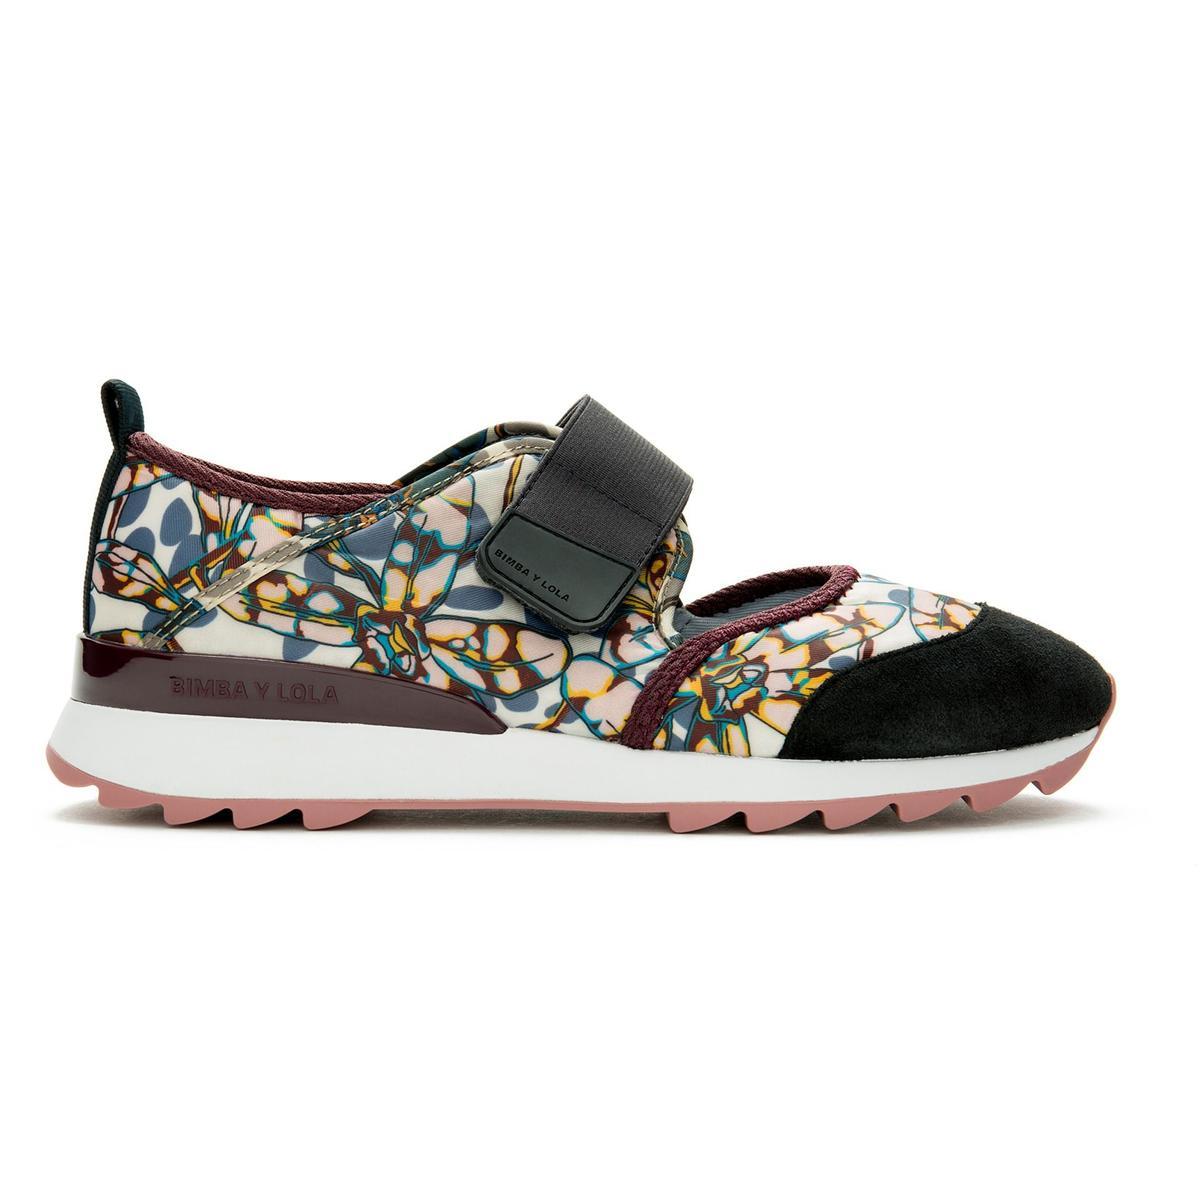 Las zapatillas de flores pisan fuerte: Sneakers, de Bimba Y Lola (105 euros).